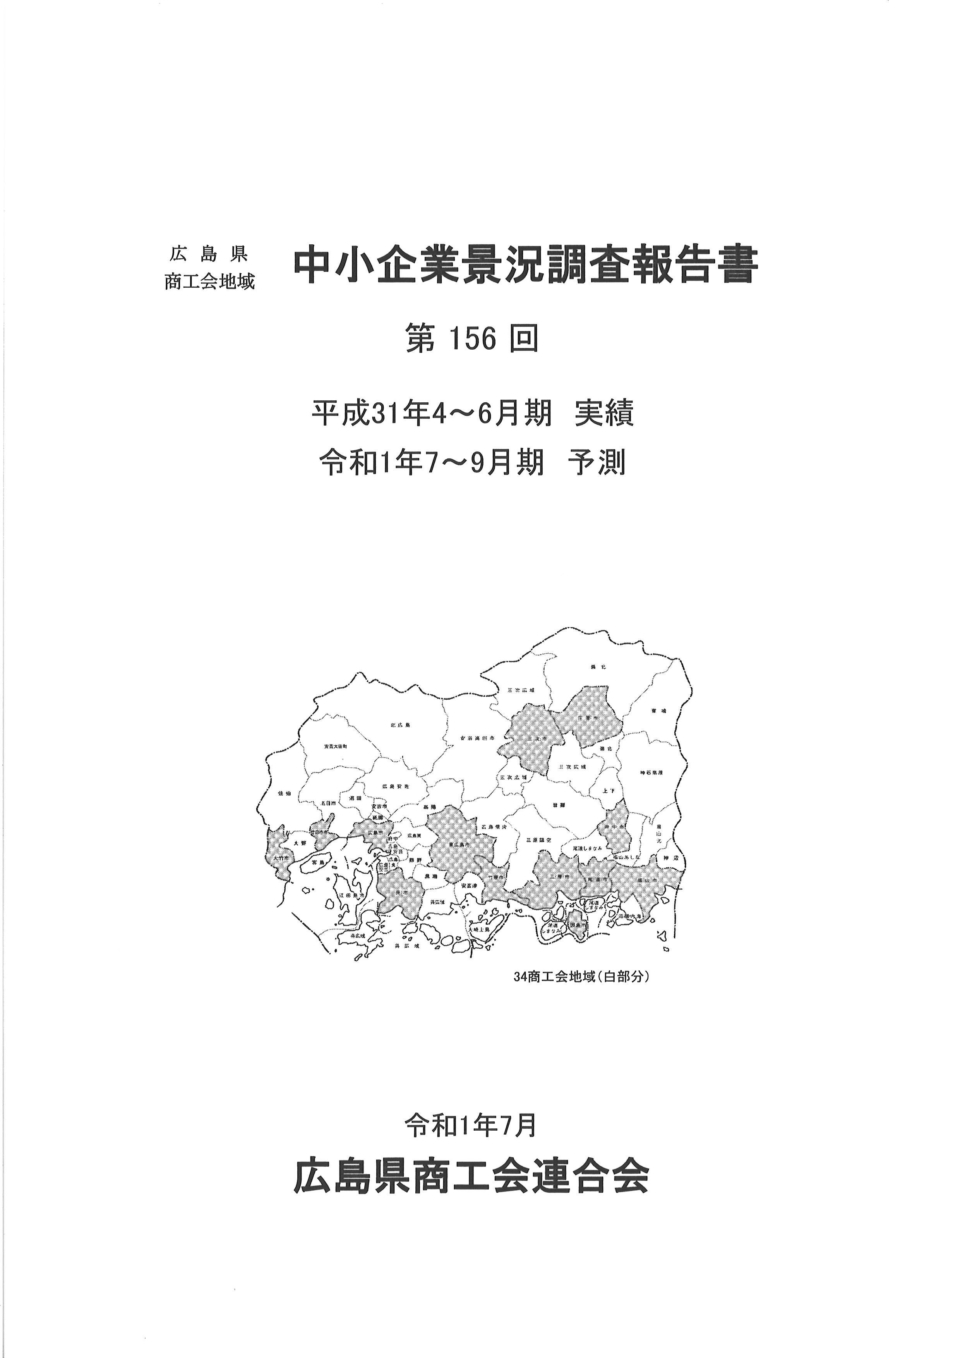 広島県商工会地域　中小企業景況調査報告書（経営発達支援事業）を公開しています